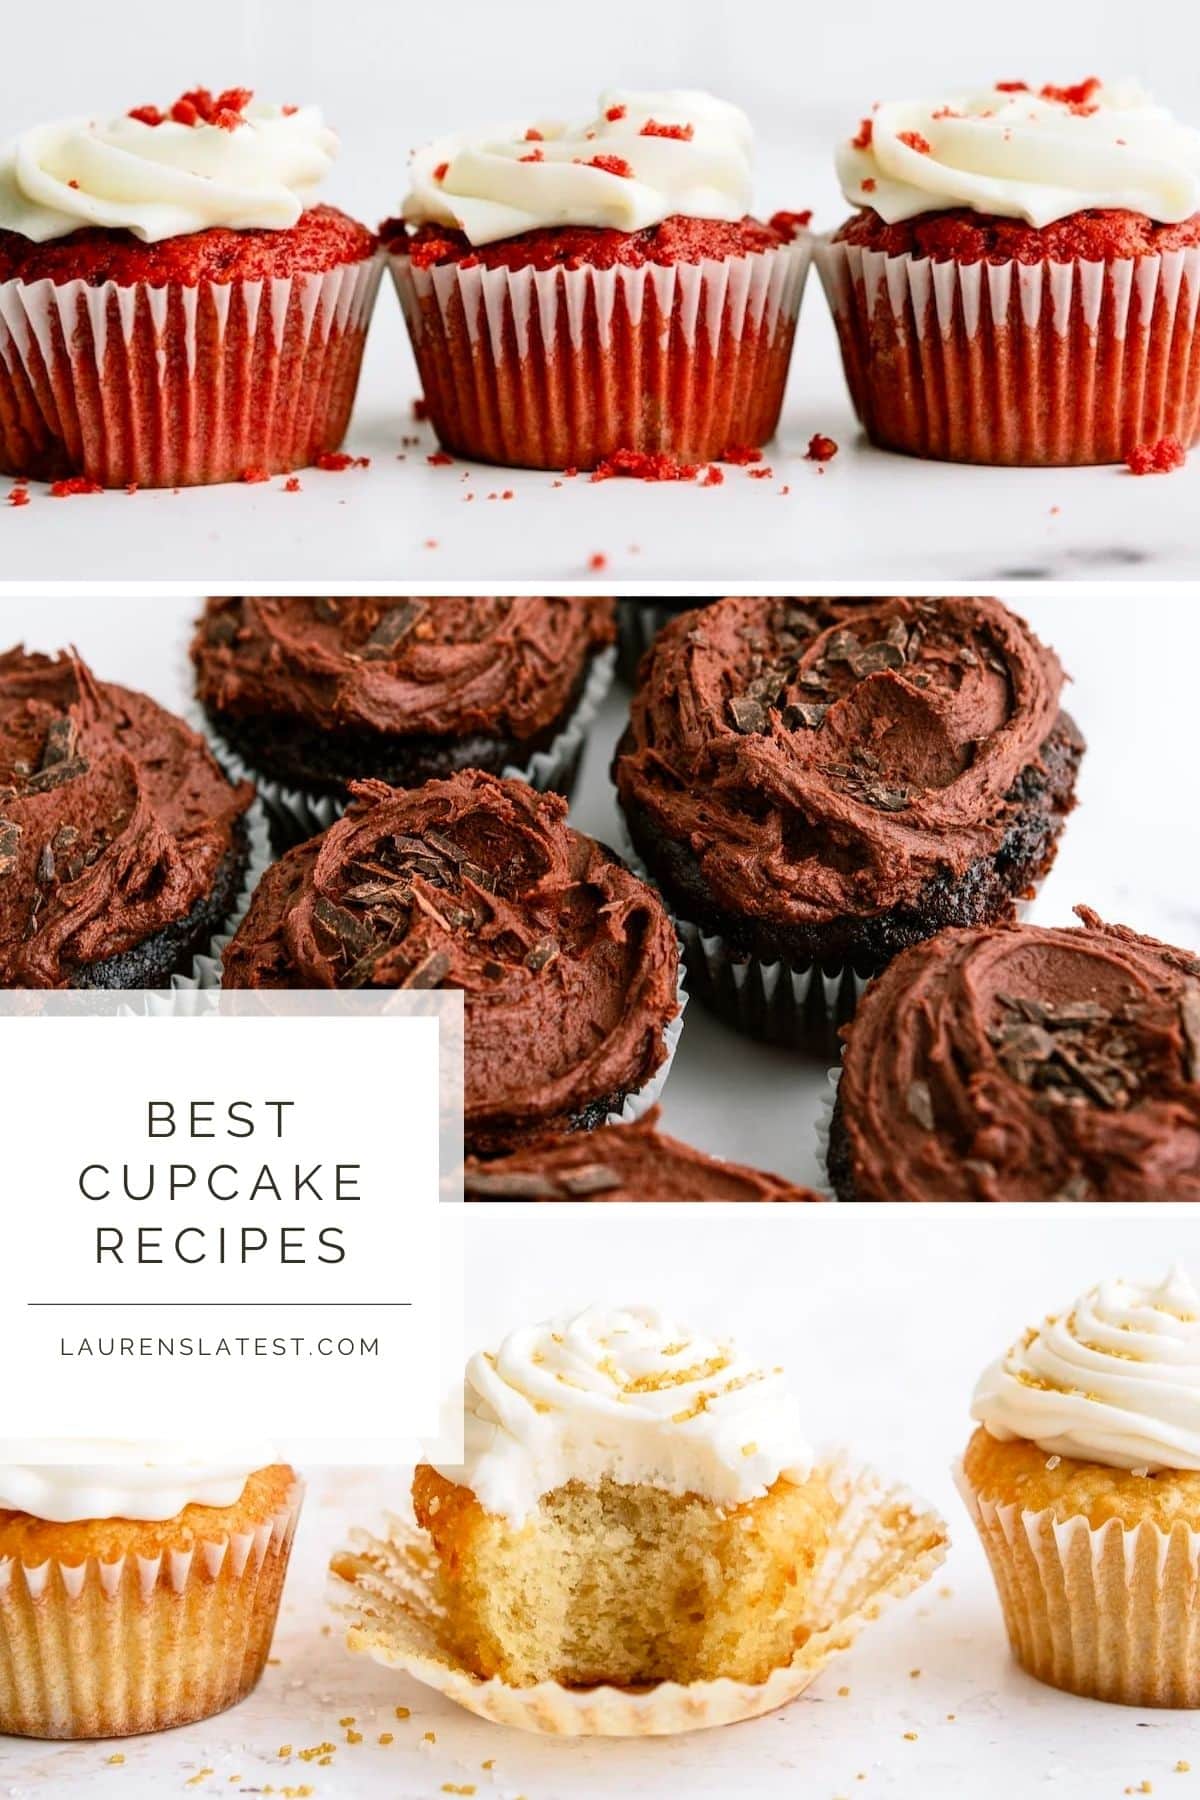 Best Cupcake Recipes - Lauren’s Latest